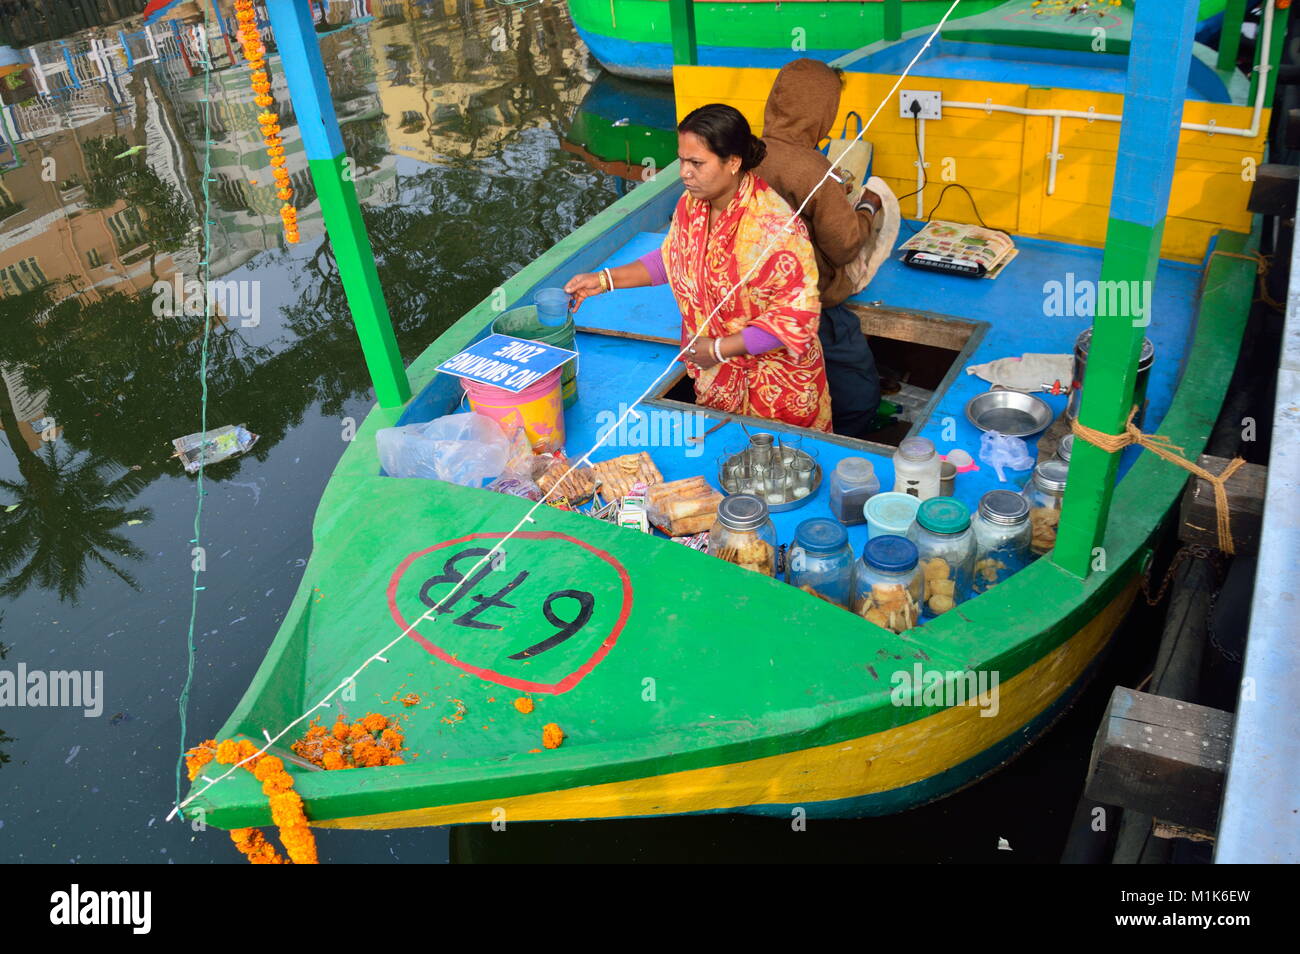 Floating Market in Kolkata Stock Photo